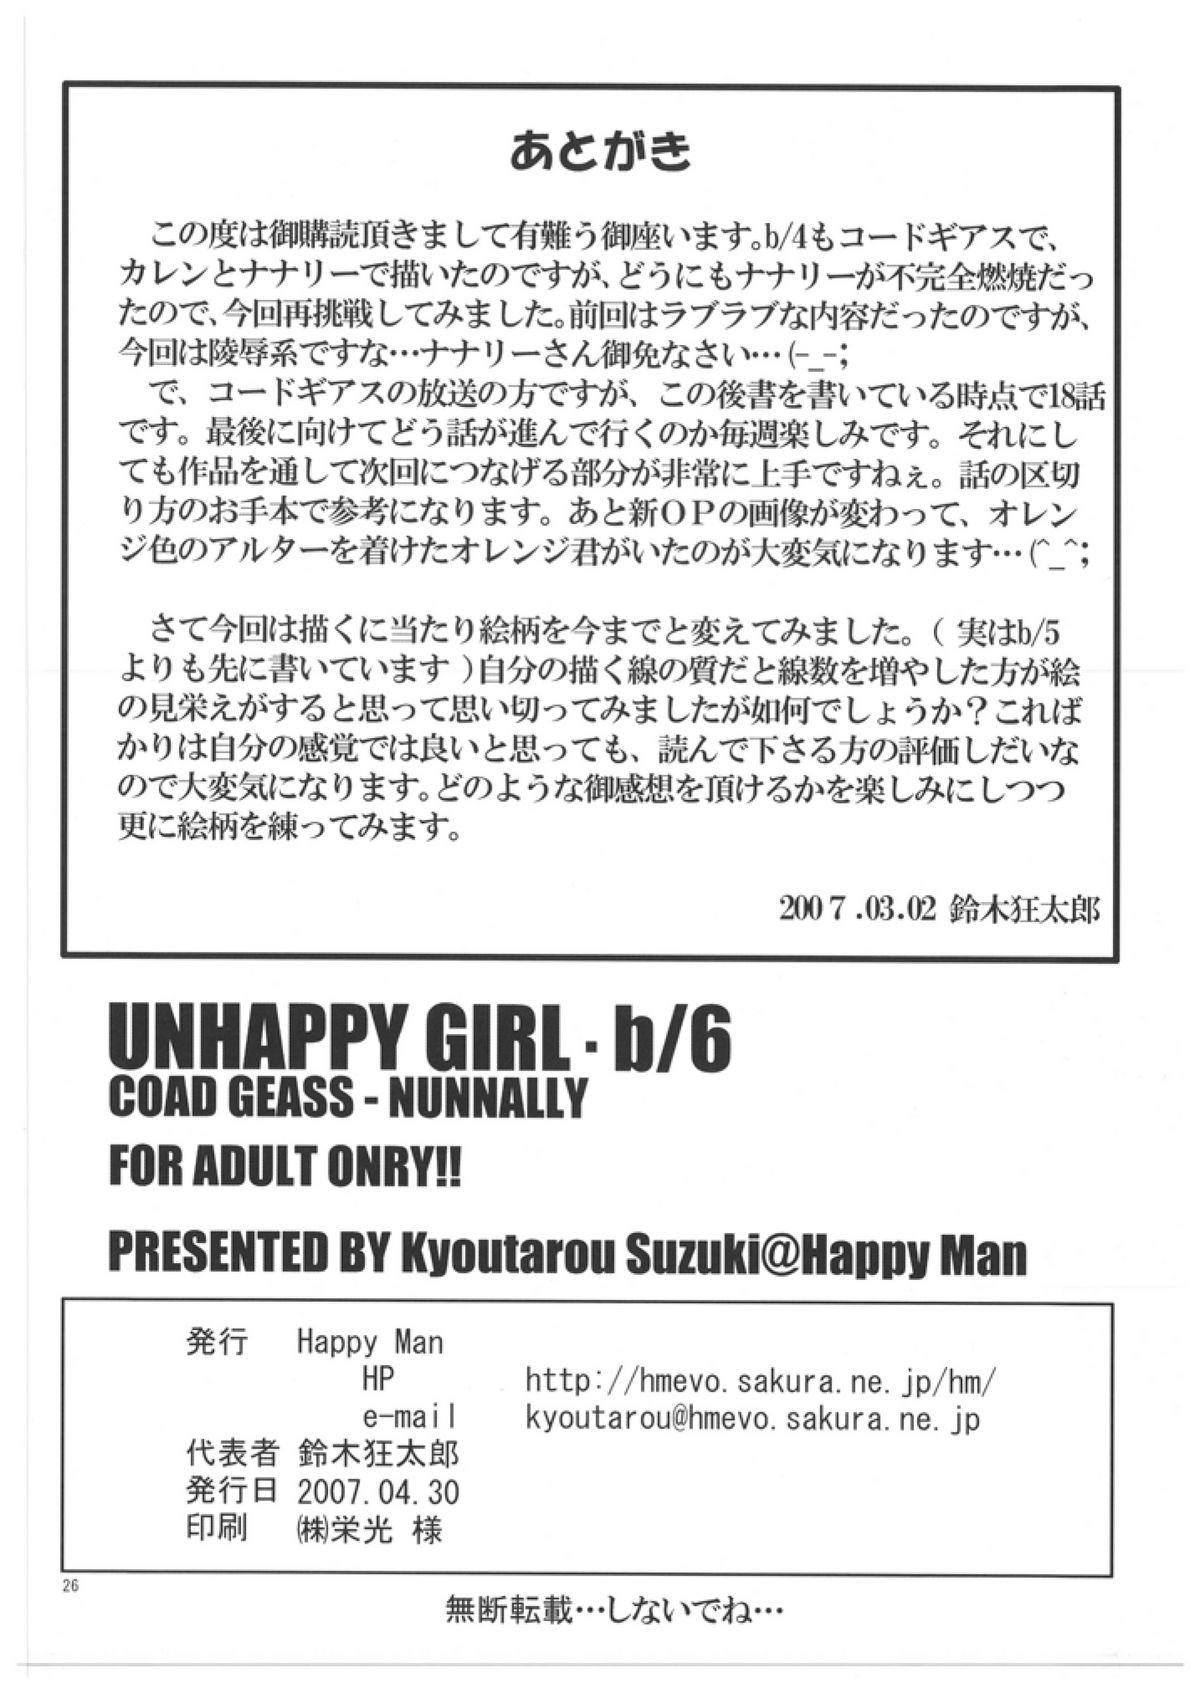 Unhappy Girl b/6 25